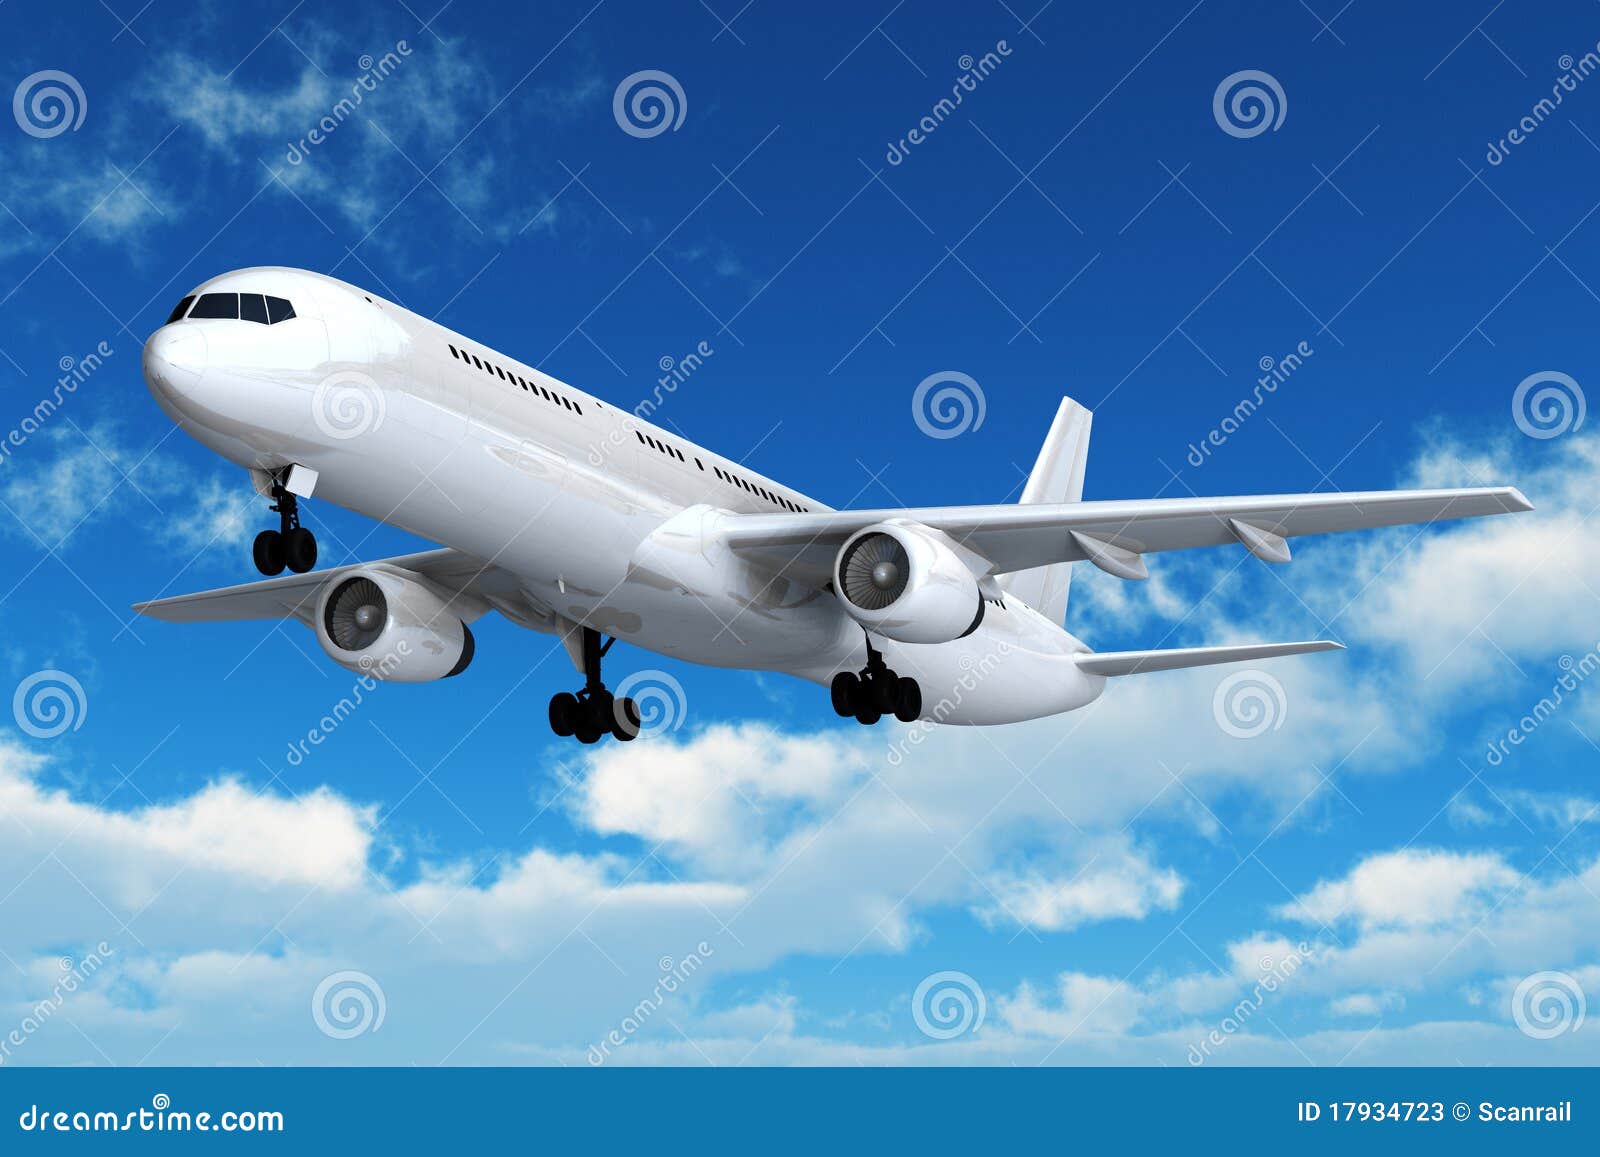 passenger airliner flight